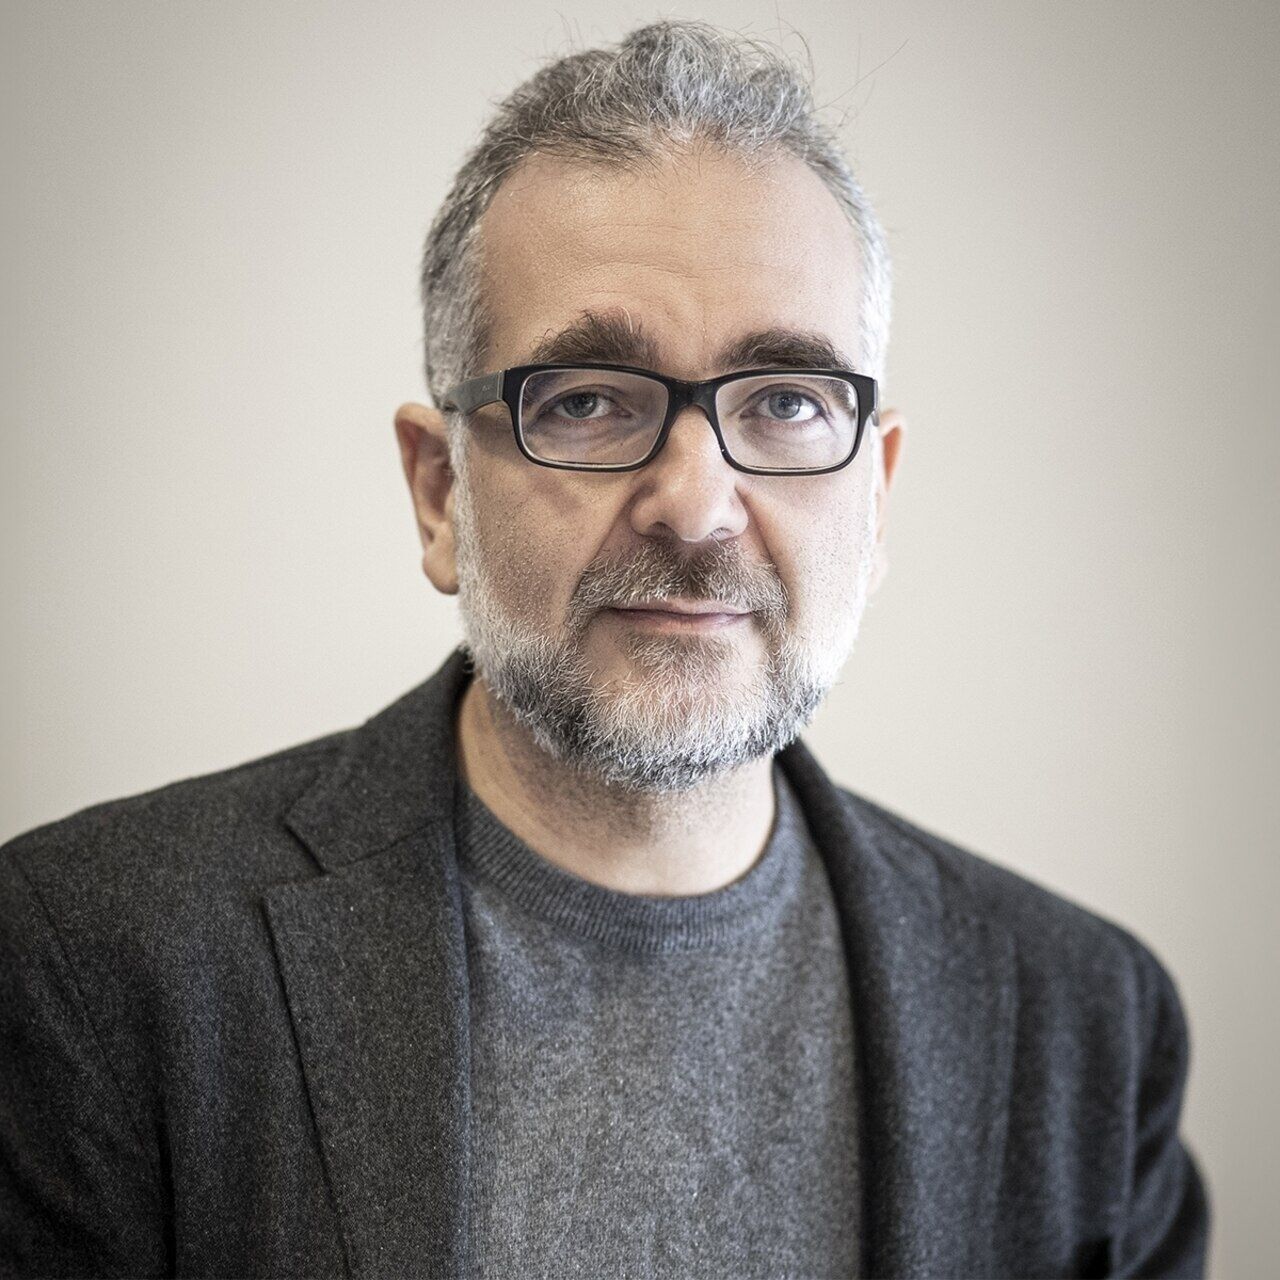 Stefano Epifani: Stefano Epifani është President i Fondacionit për Qëndrueshmërinë Dixhitale dhe profesor i kësaj lënde në Universitetin e Pavias